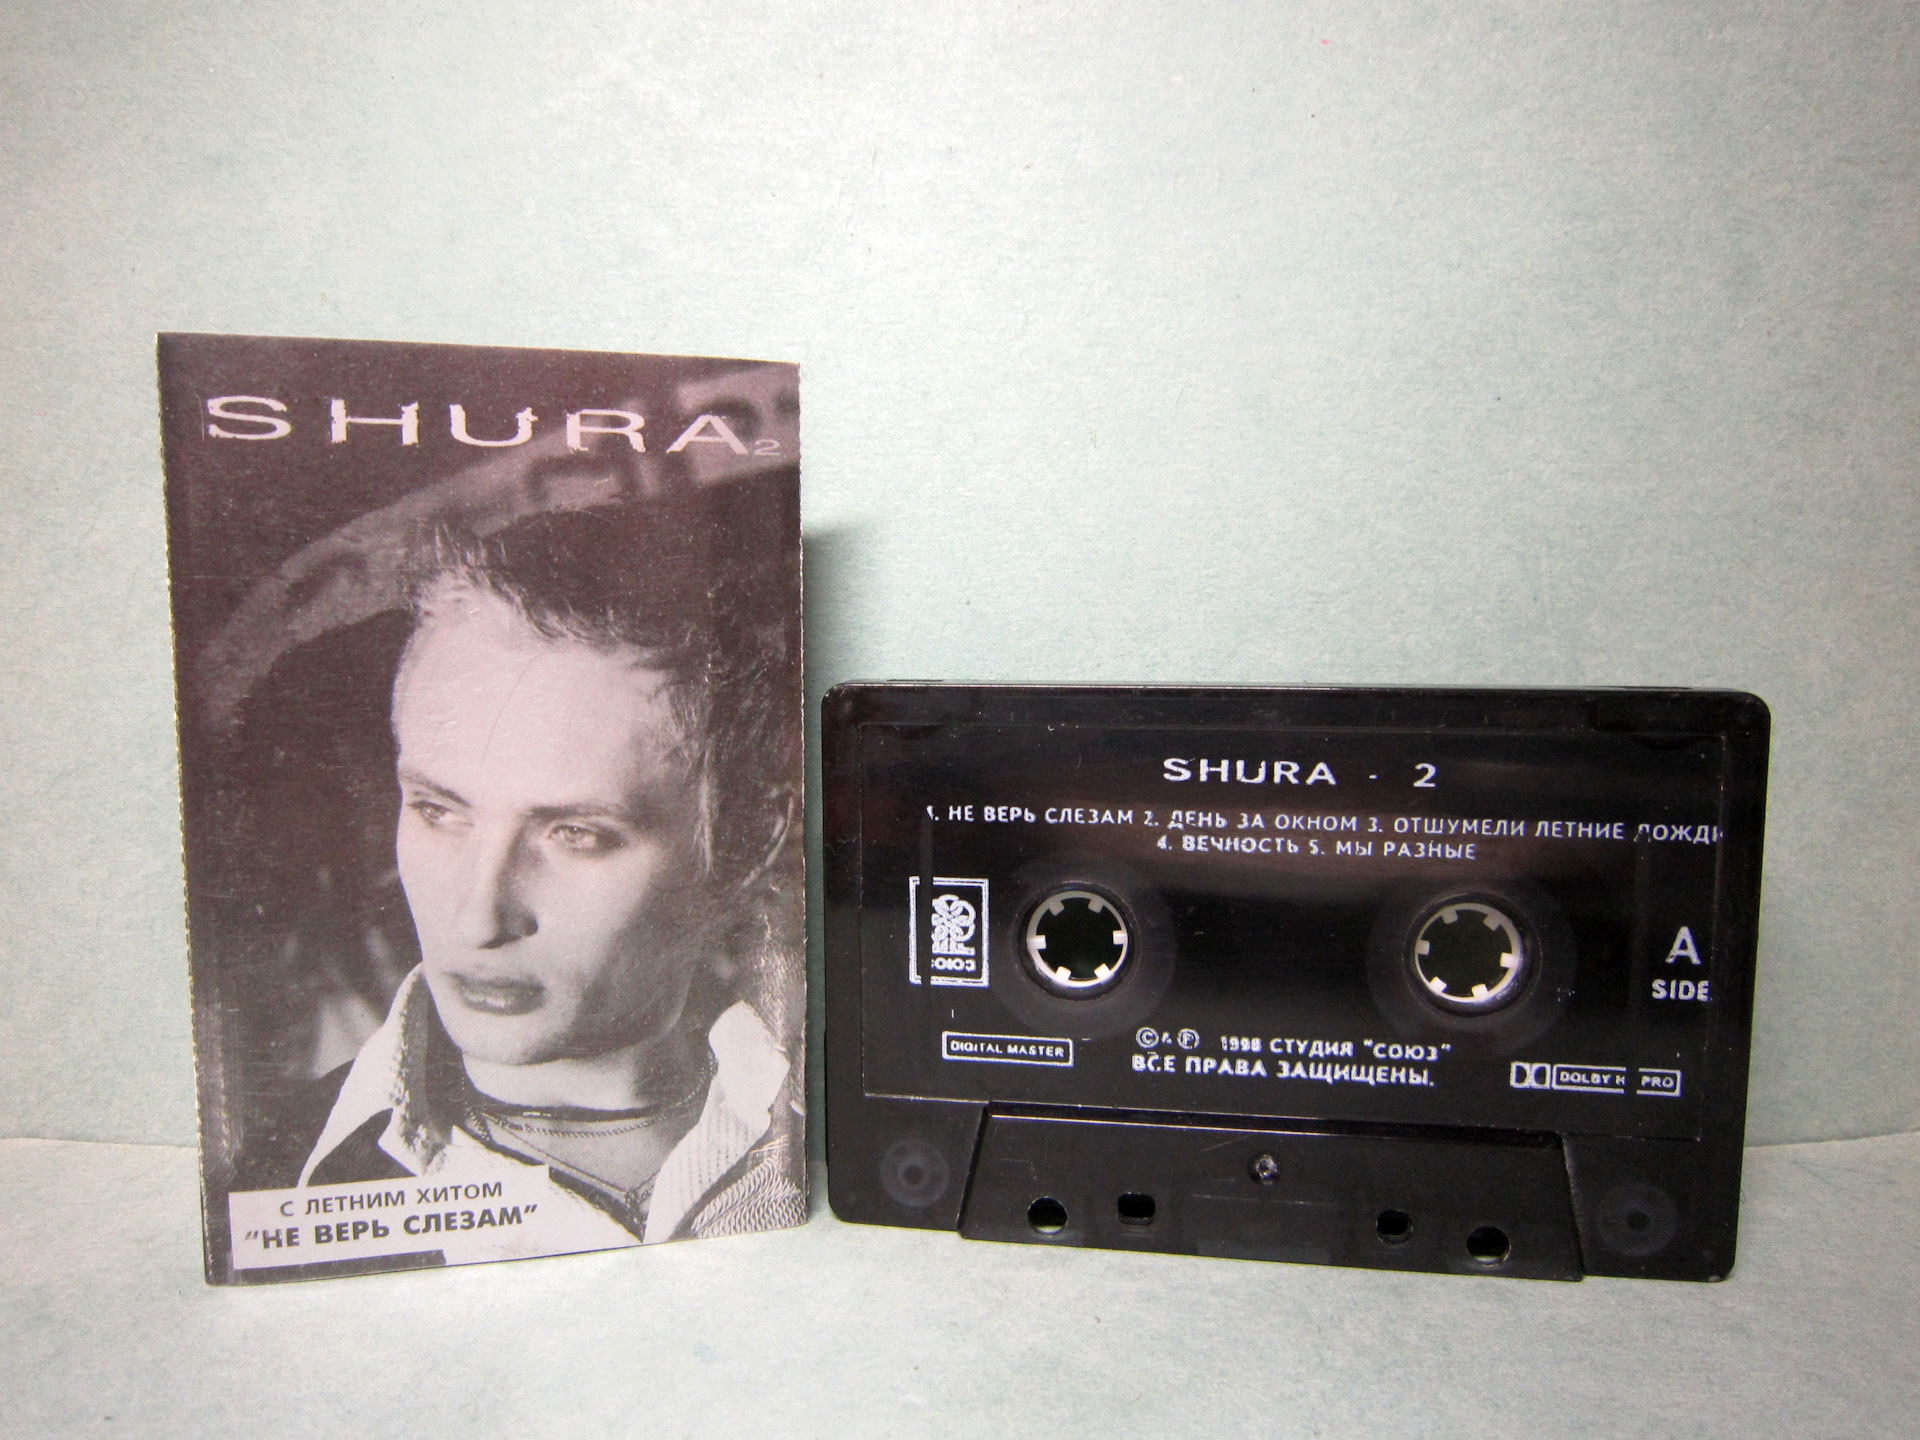 Что значит не верь слезам. Shura 2 Шура кассета. Аудиокассеты Шура. Обложка аудиокассеты Шура. Первая кассета Шуры.